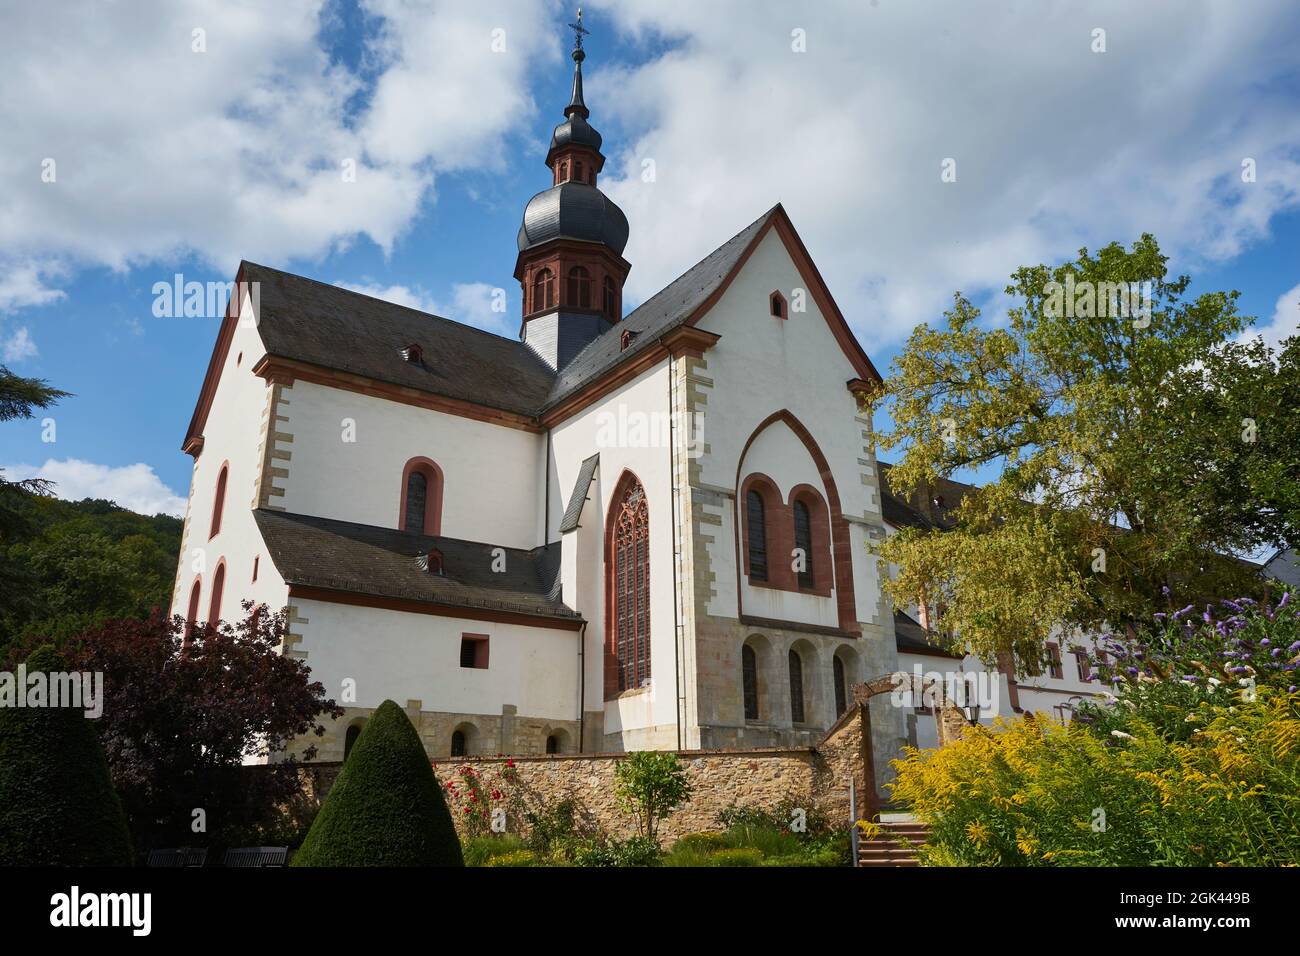 Klosterkirche von Kloster Eberbach, Basilika, vorne der Garten, nahe Eltville am Rhein, Rheingau, Hessen, Deutschland Stock Photo